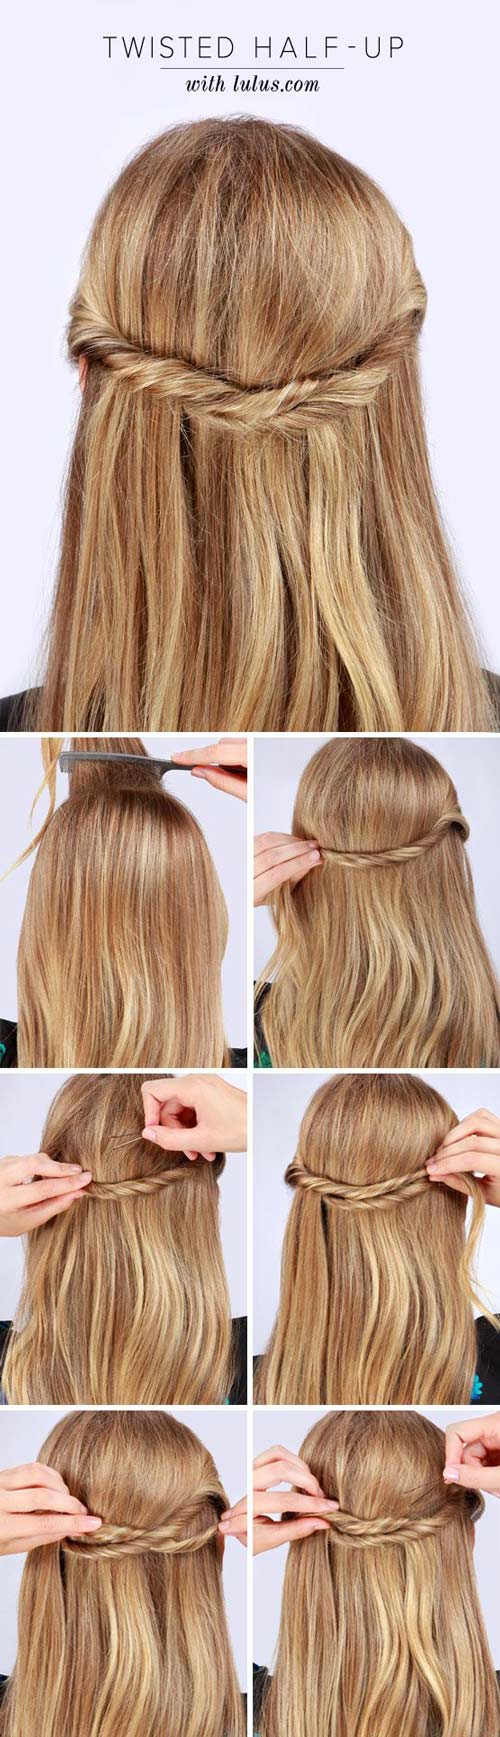 10 peinados para lucir tu cabello lacio sin tener que ondularlo 0